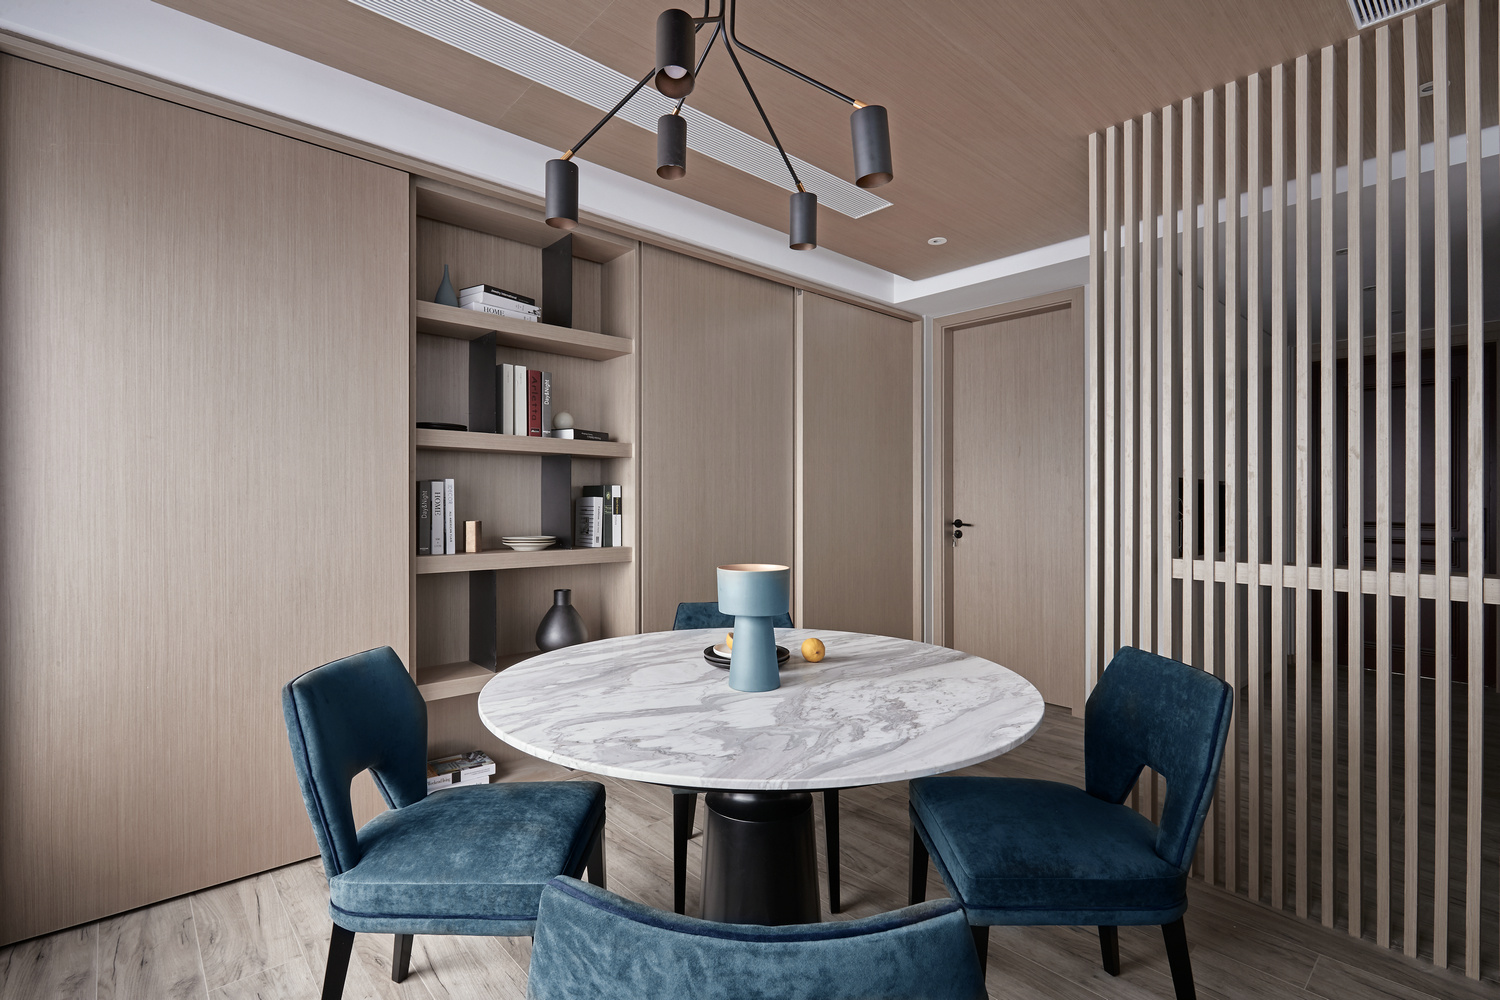 木质背景将美式的特质凸显出来，在雅致的空间里，餐椅材质和色彩拿捏得刚刚好。